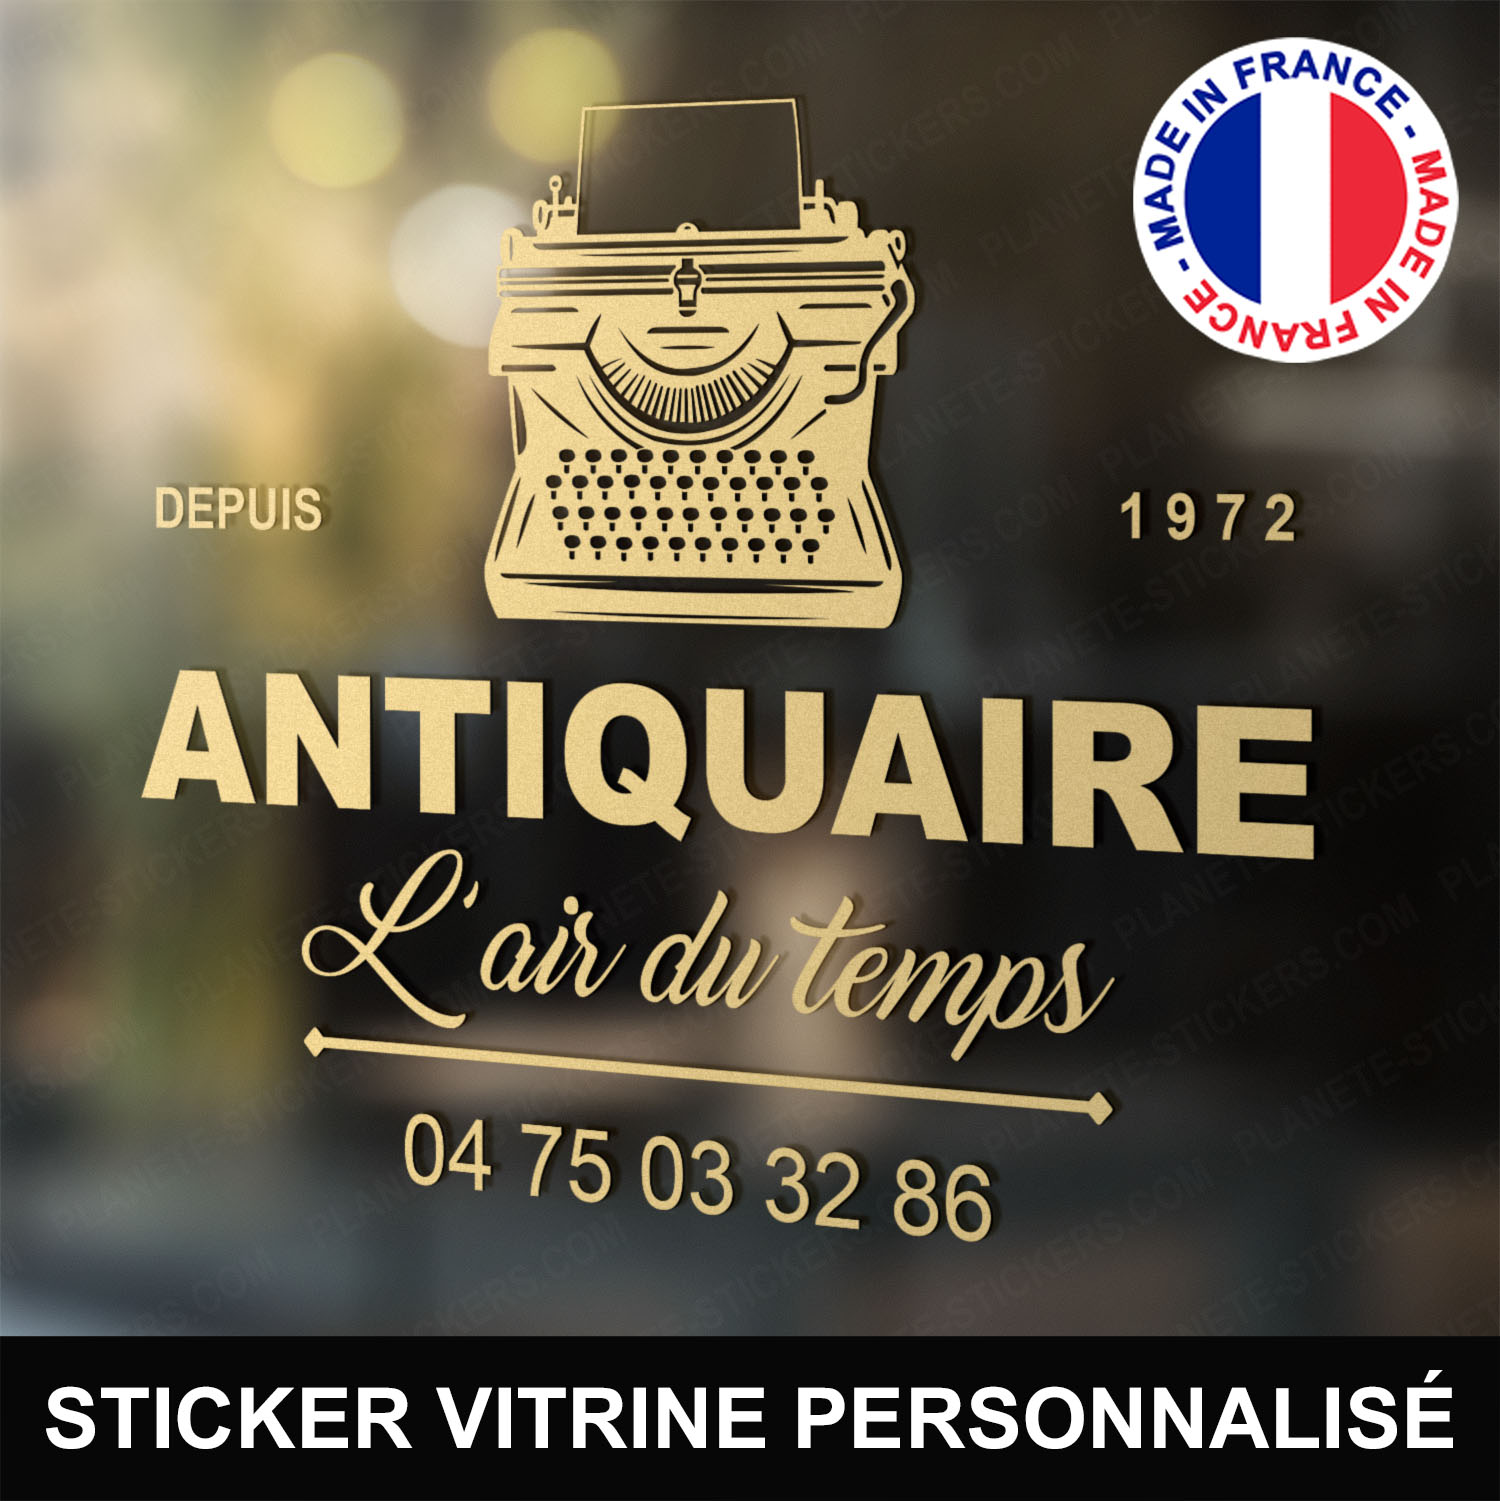 ref6antiquairevitrine-stickers-antiquaire-vitrine-sticker-personnalisé-autocollant-antiquité-vitrophanie-vitre-professionnel-logo-machine-à-écrire